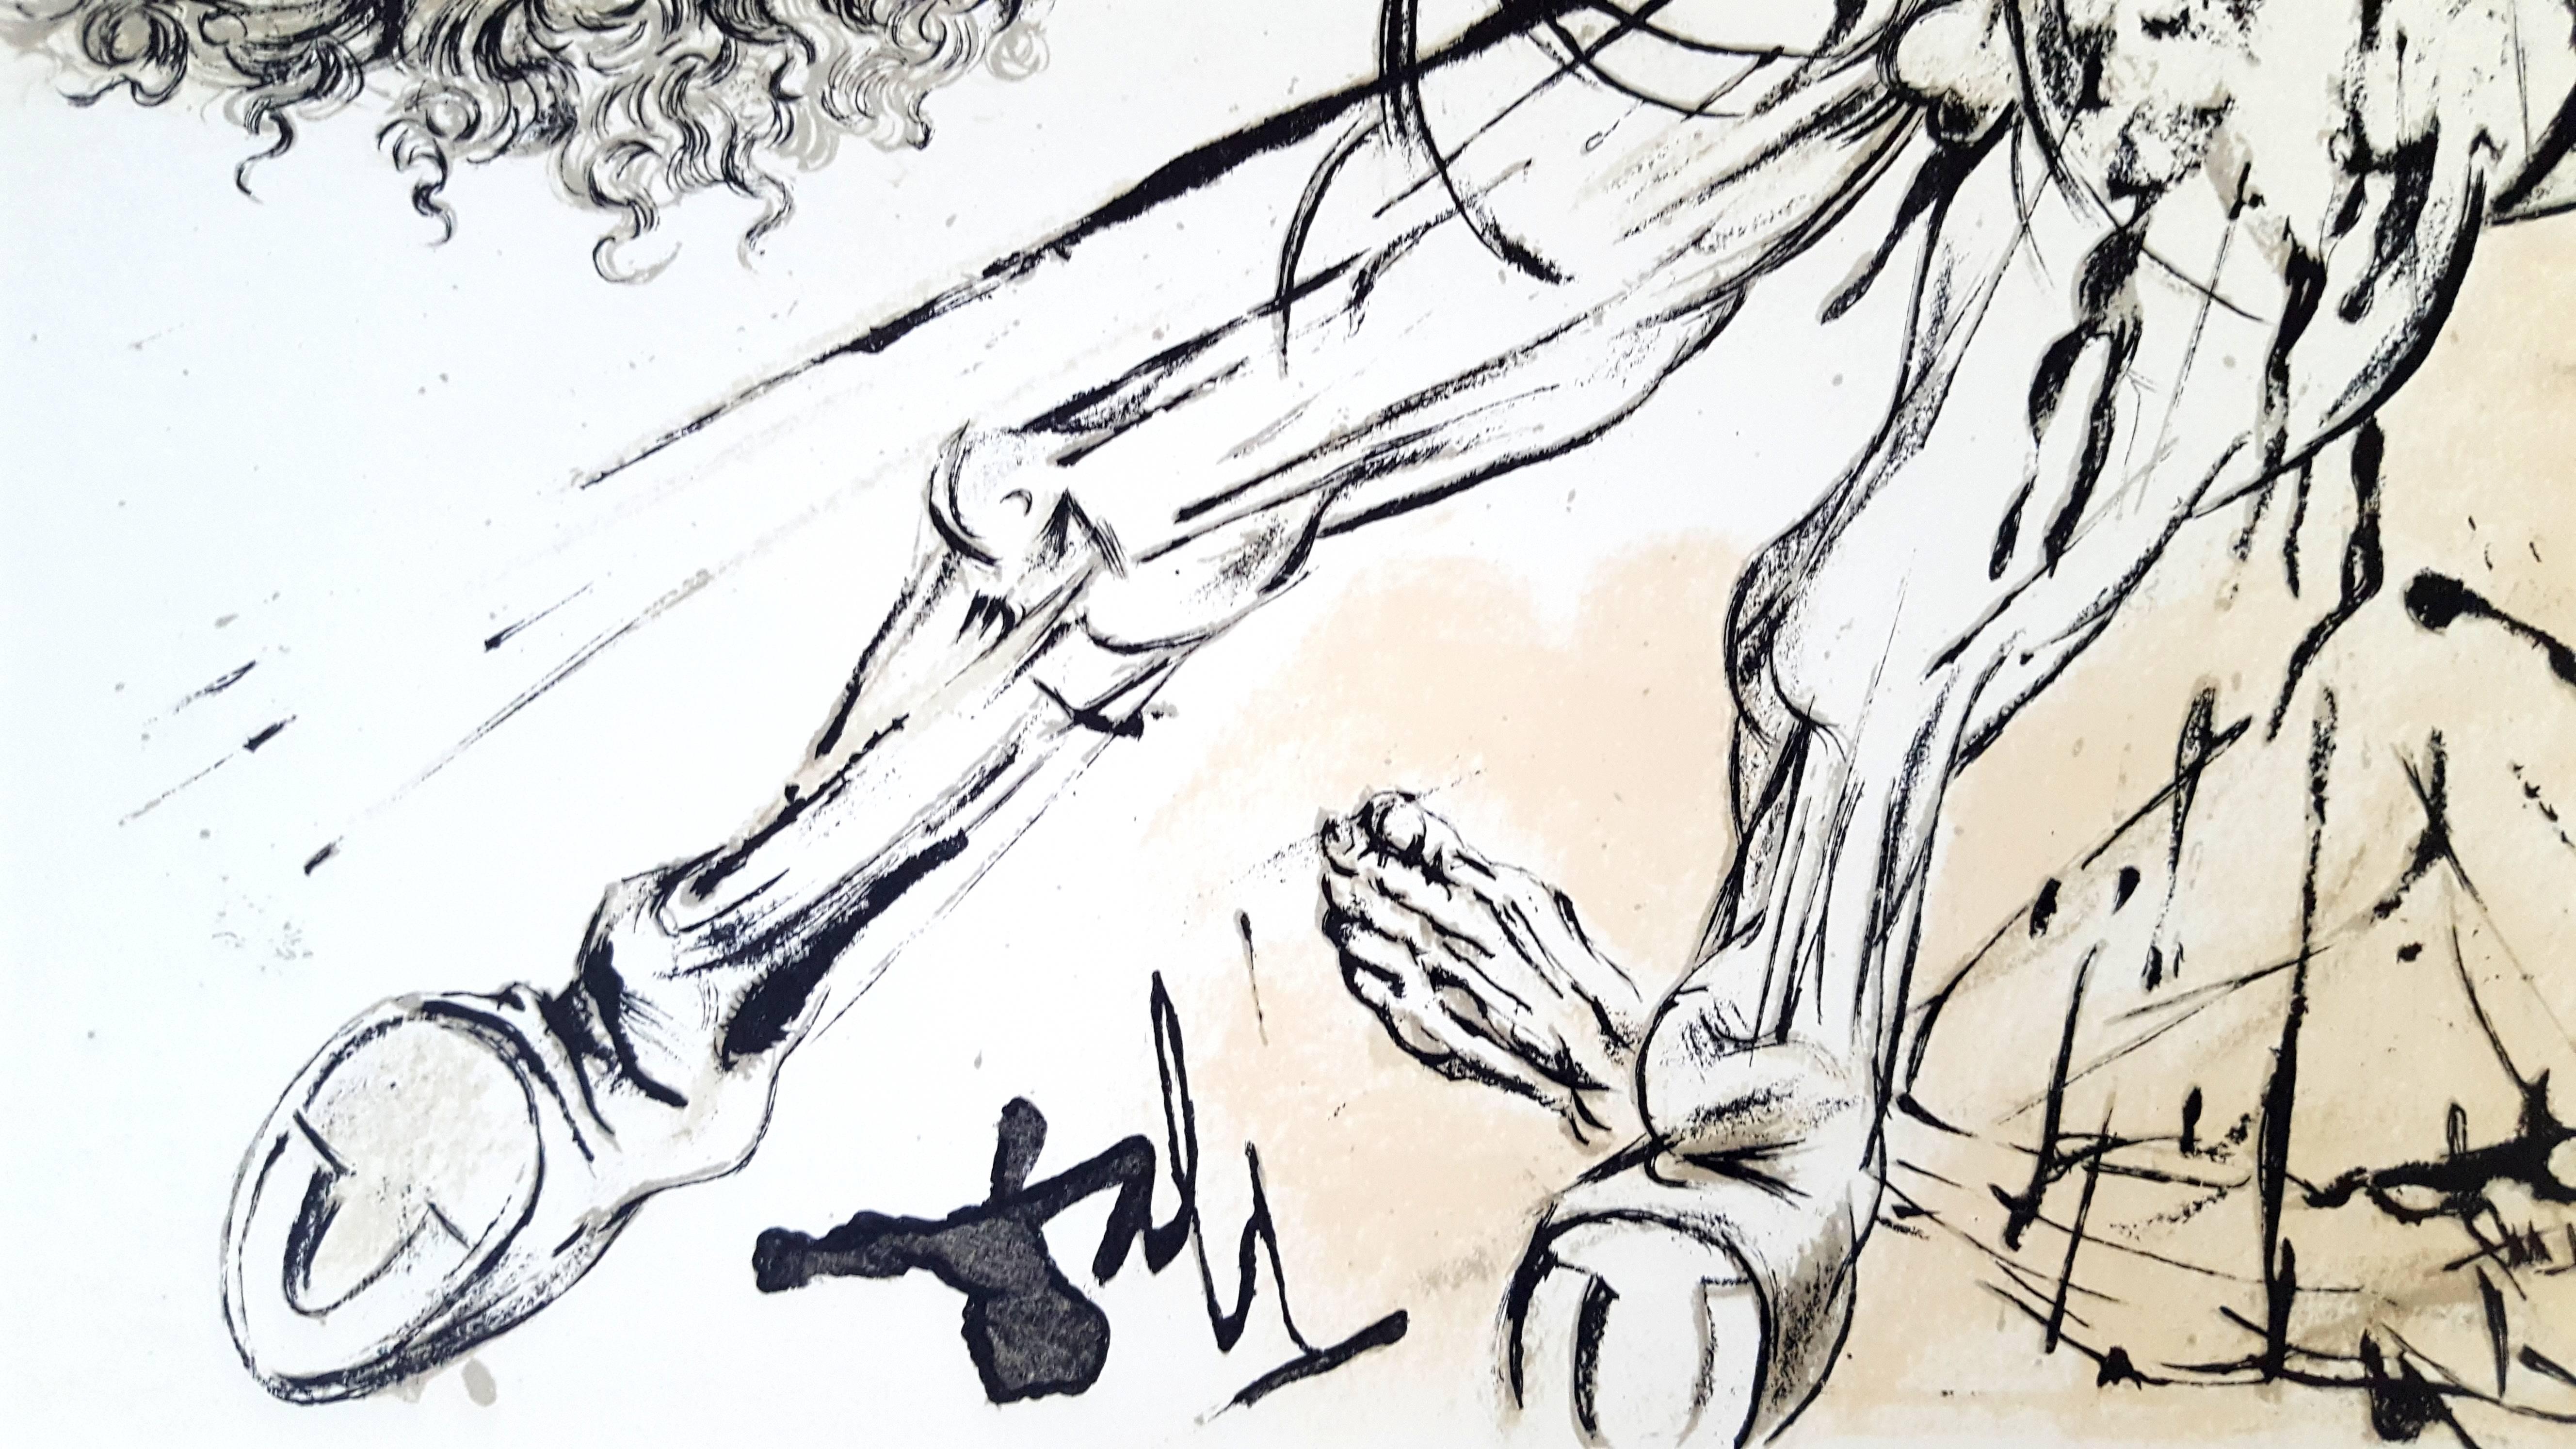 Salvador Dali - Apparition de Dulcinée - Lithographie originale
Joseph FORET, Paris, 1957
SIGNATURE : imprimée dans l'image
LIMITÉ : 197 exemplaires. 
TAILLE : 41 x 33 cm
REFERENCES : Champ 57-1 / Michler & Lopsinger 1001-1012. 
INFORMATIONS :